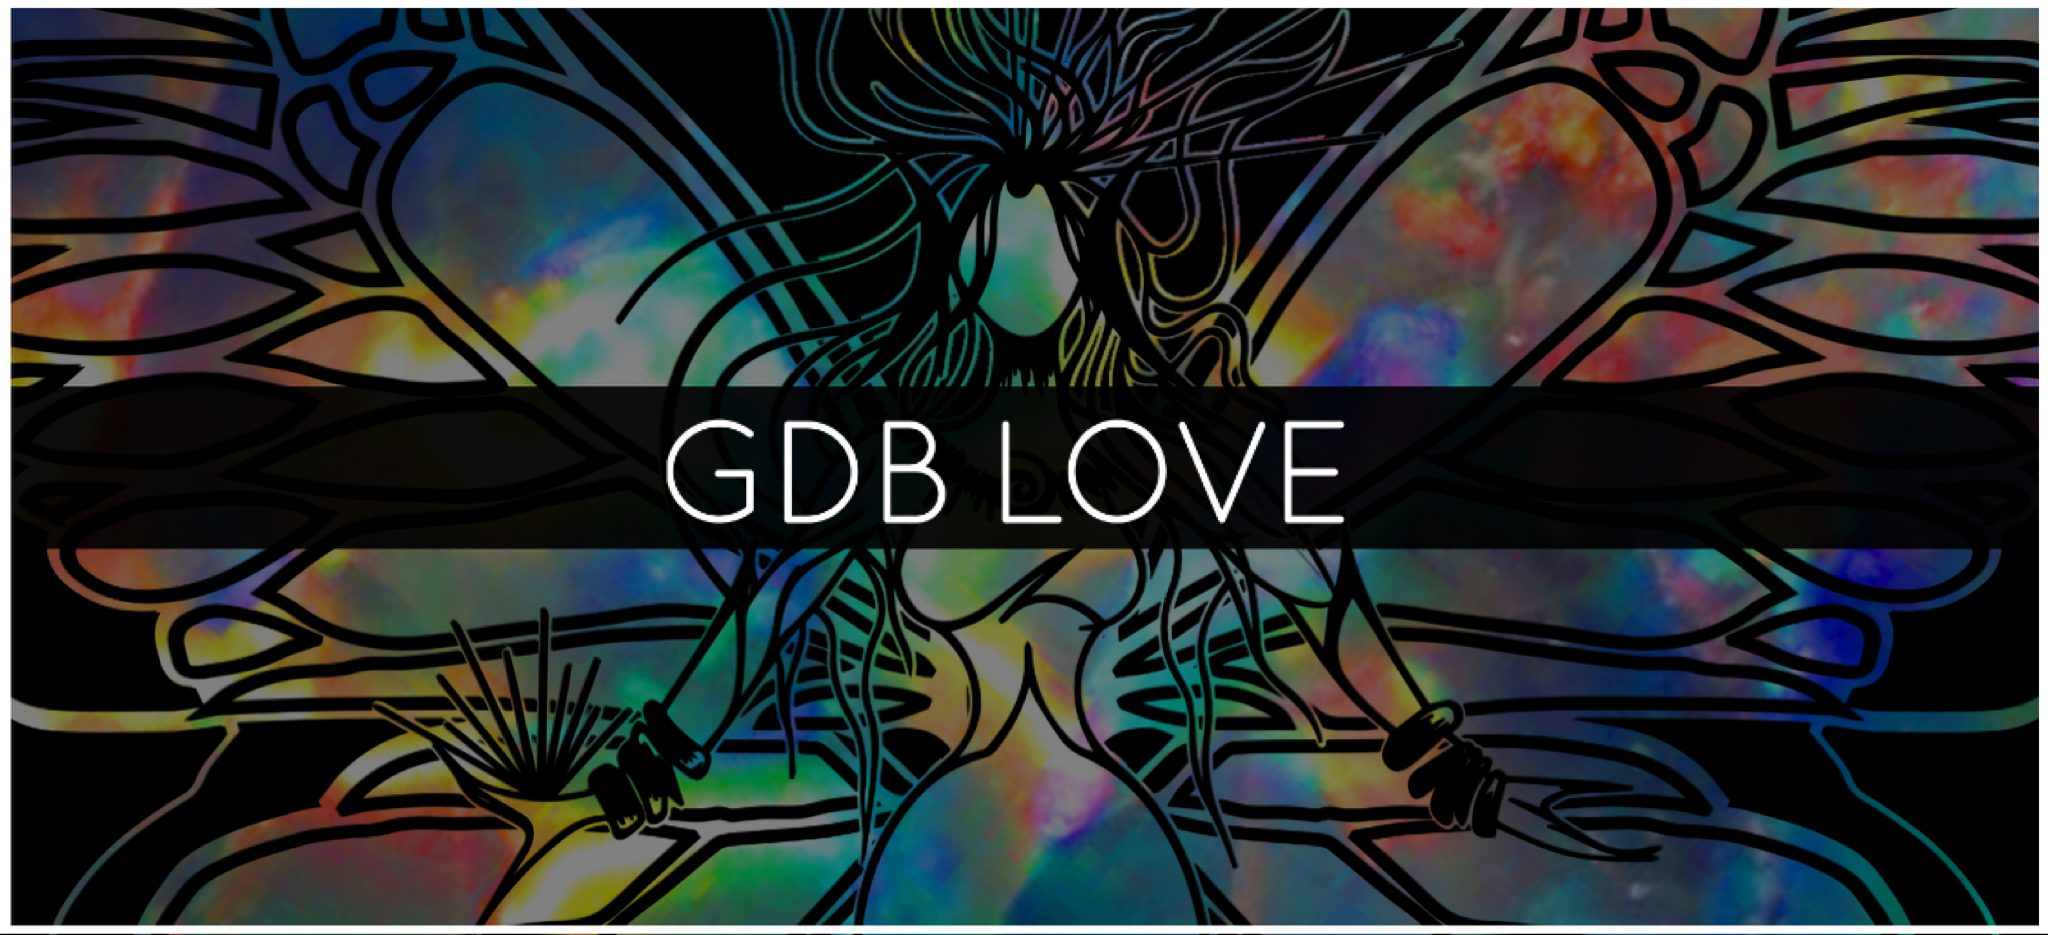 GDB LOVE TALISMAN™